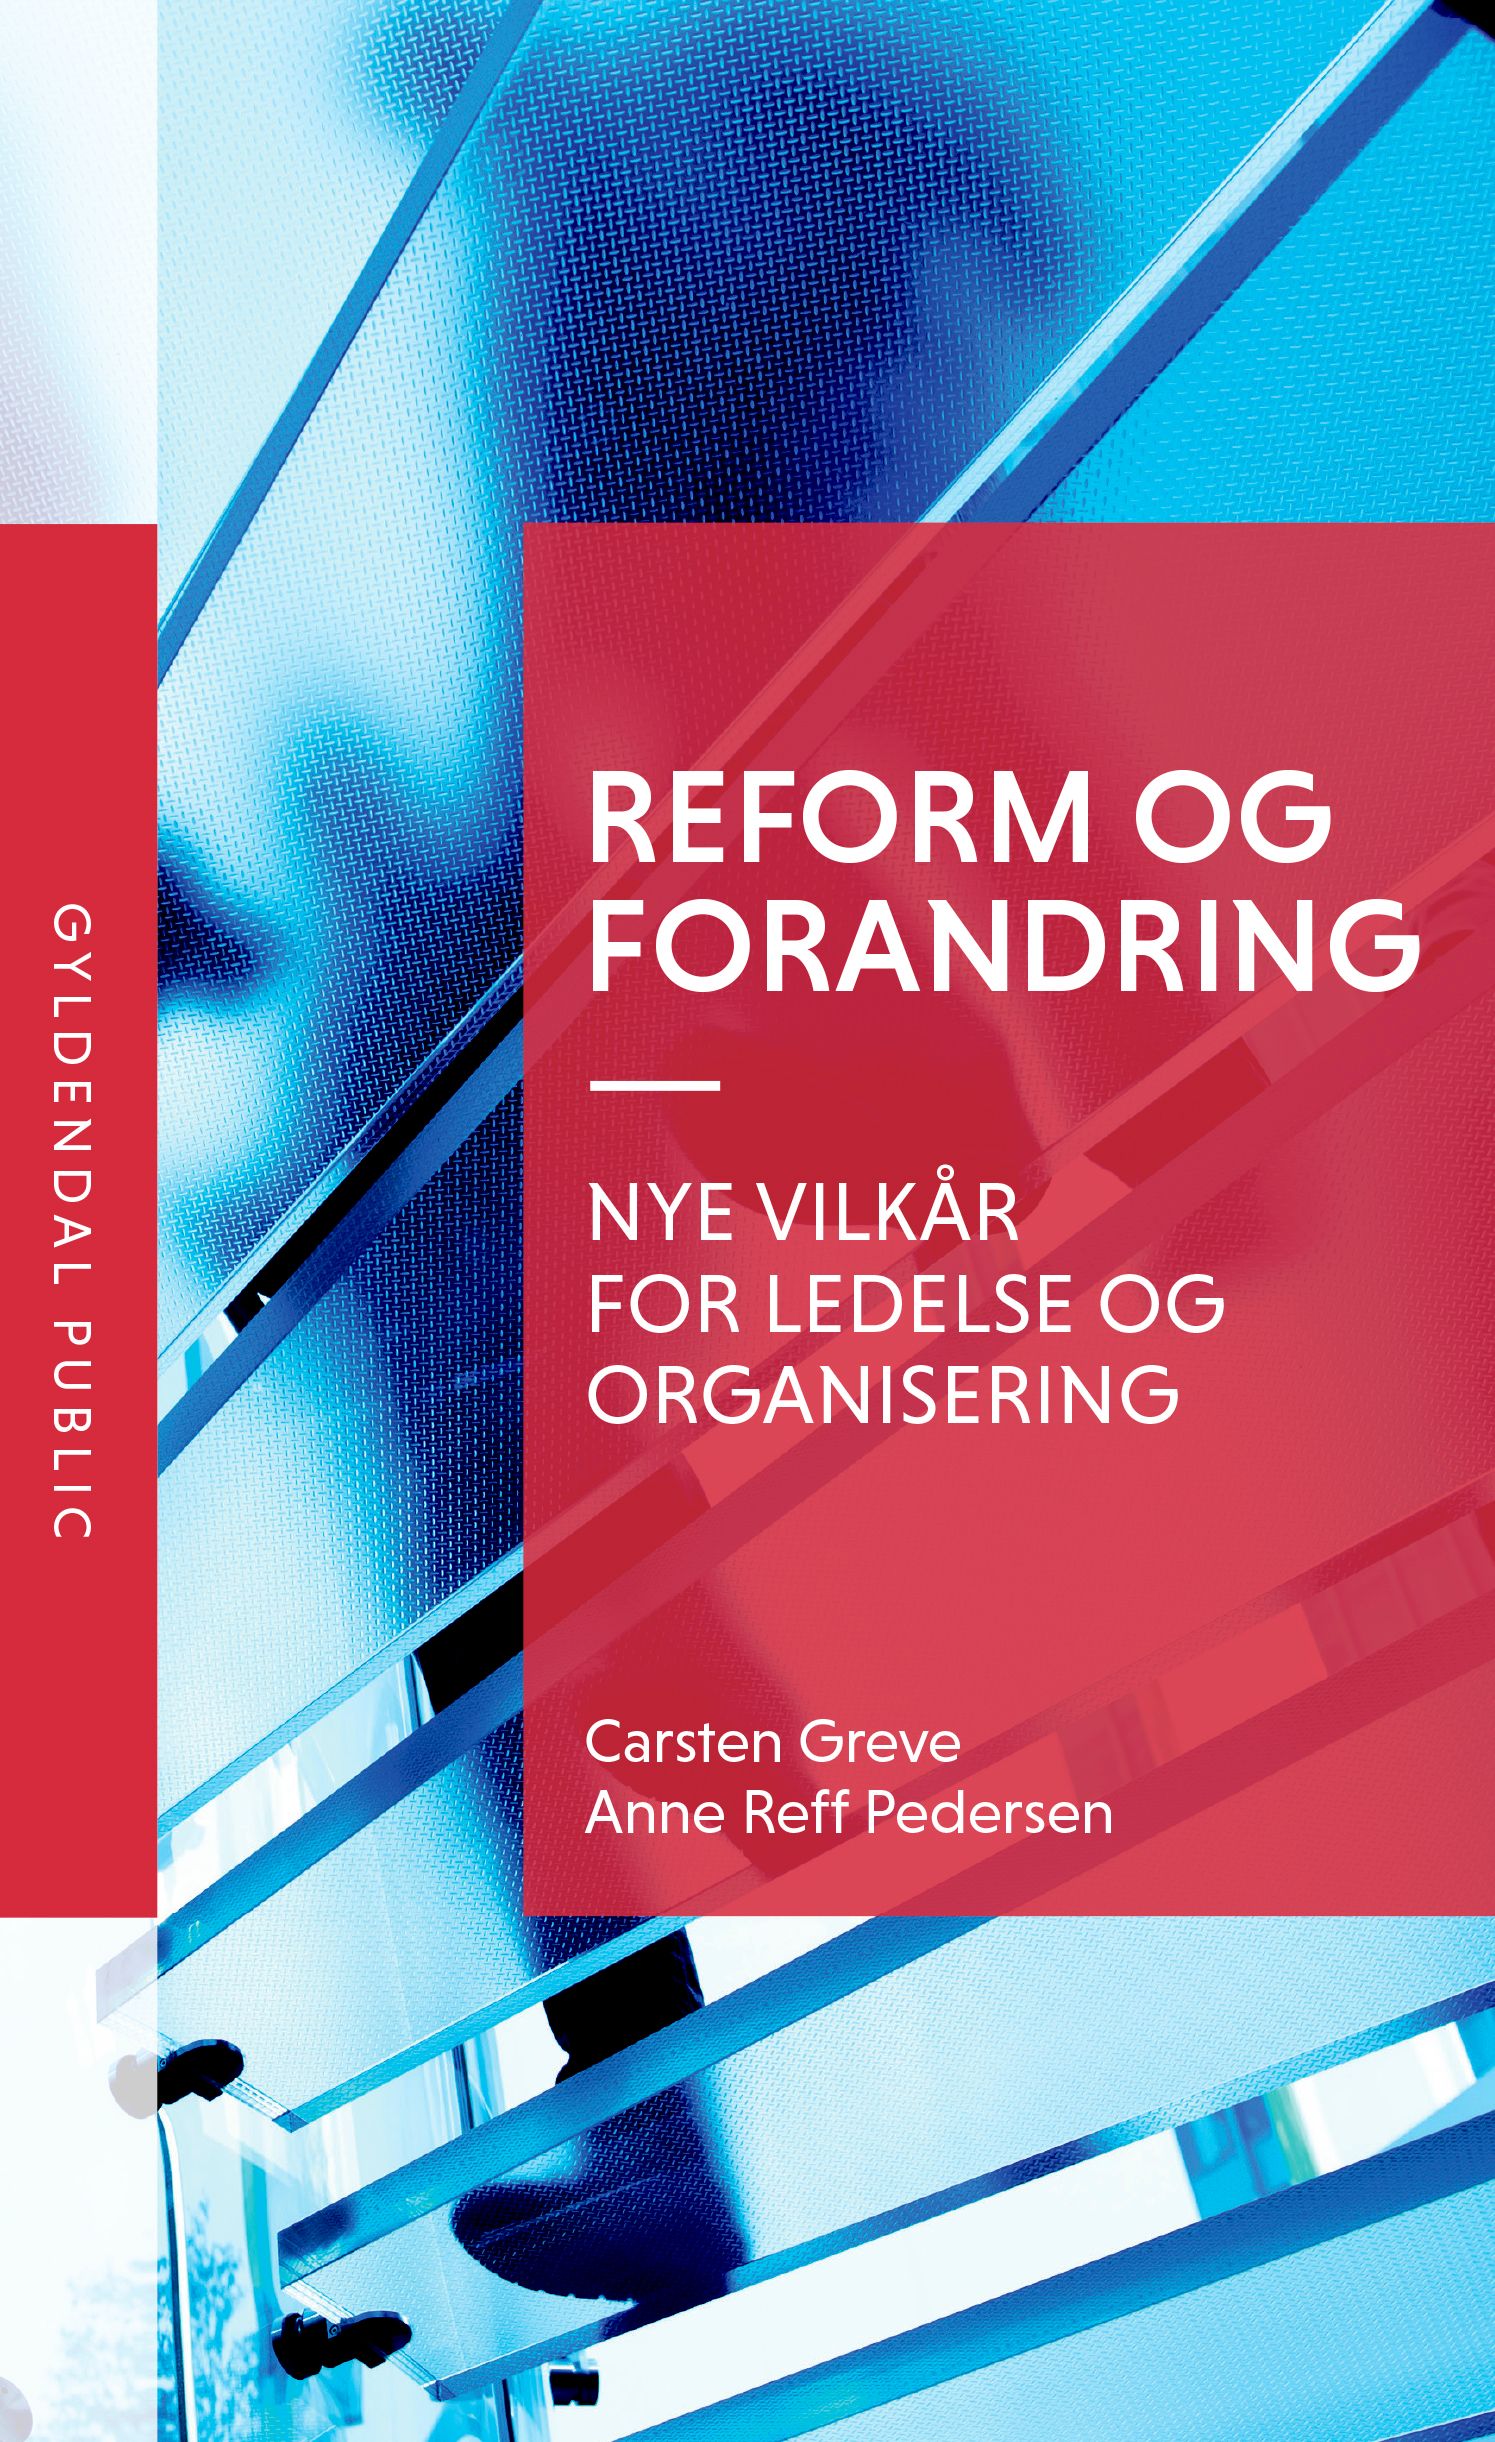 Reform og forandring, eBook by Carsten Greve, Anne Reff Pedersen